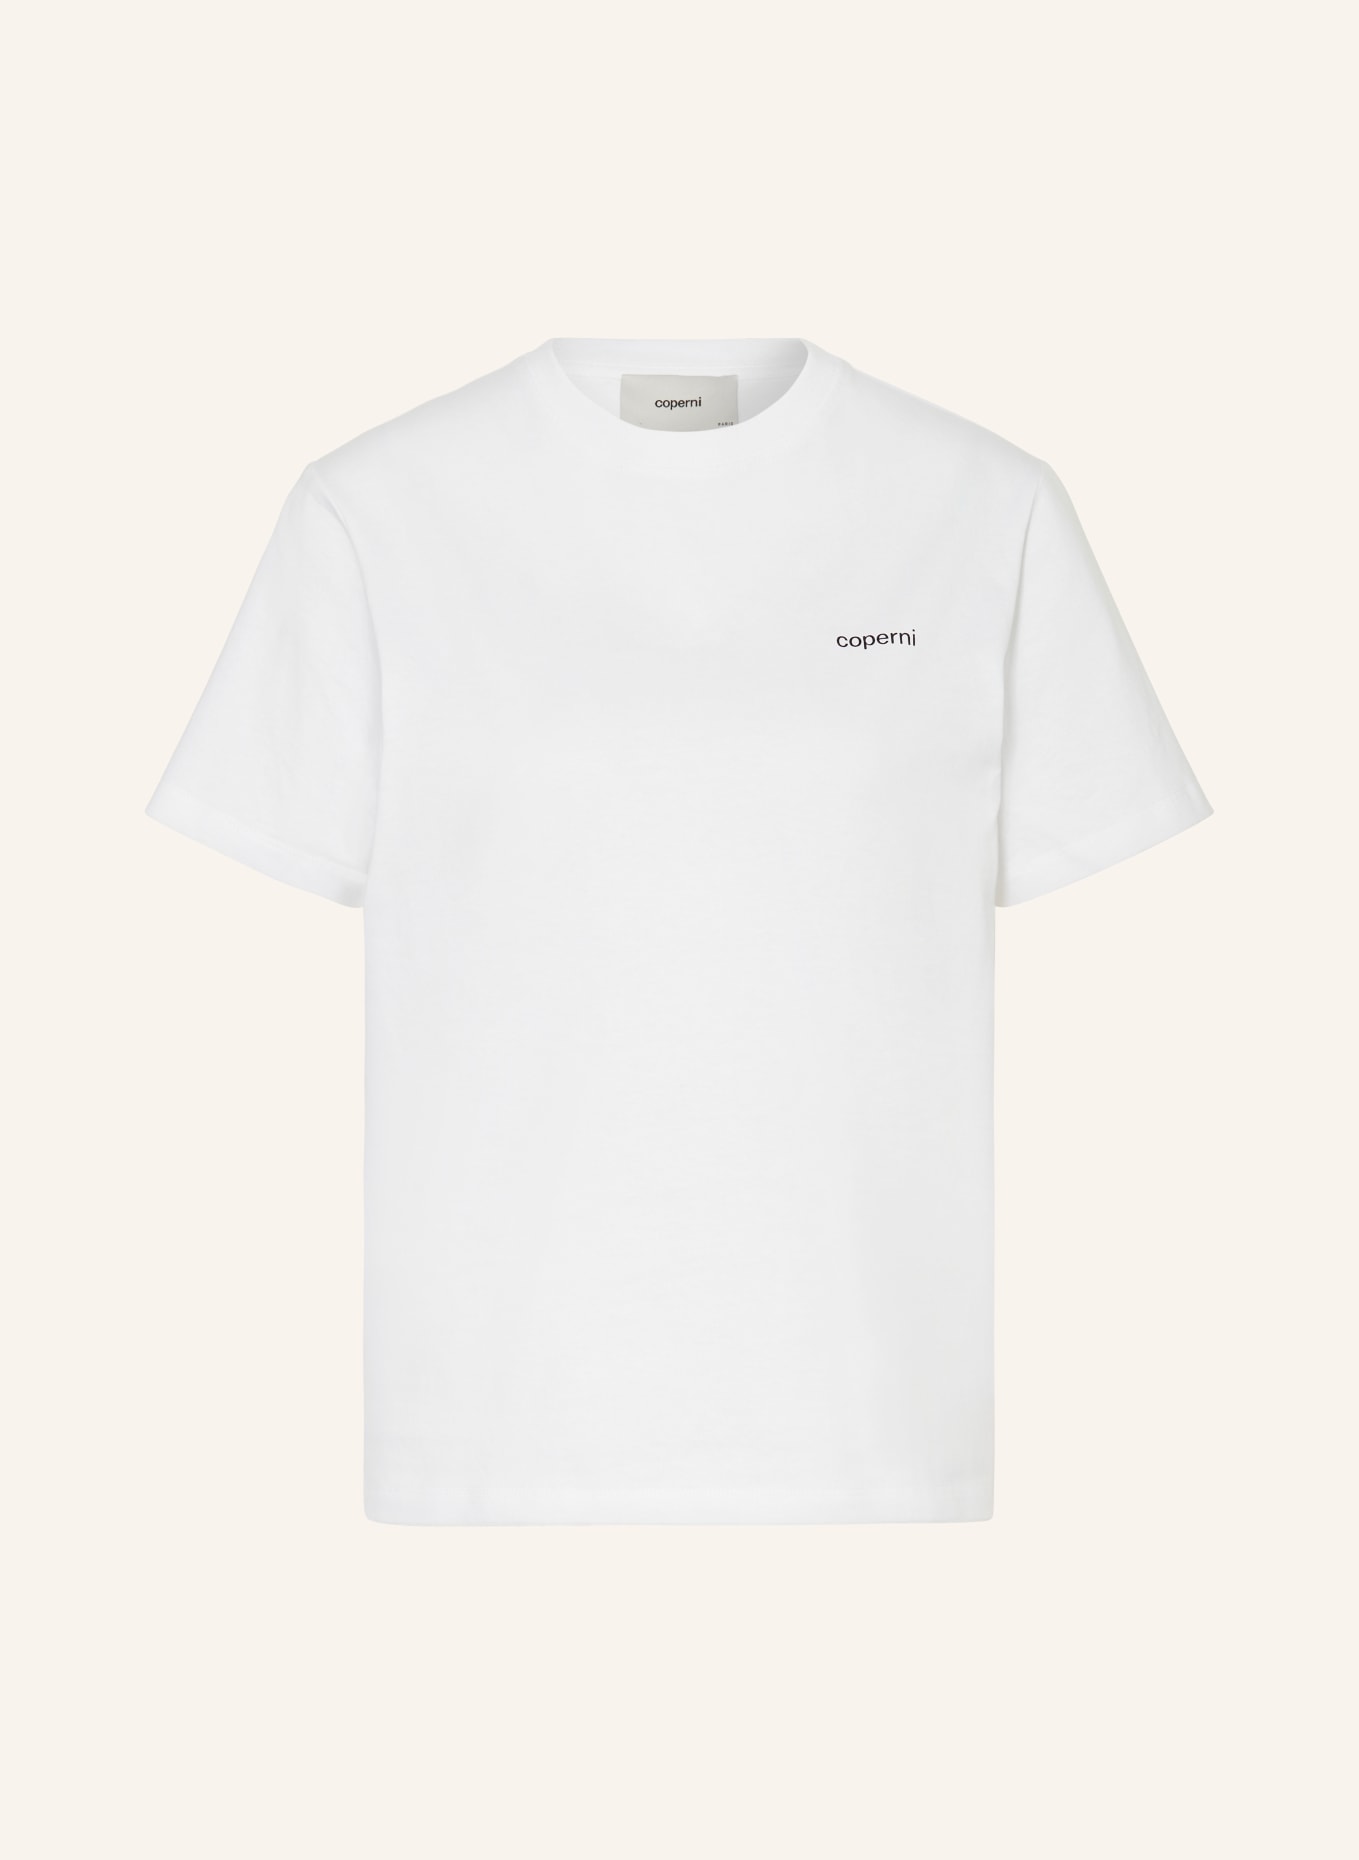 coperni T-shirt, Color: WHITE (Image 1)